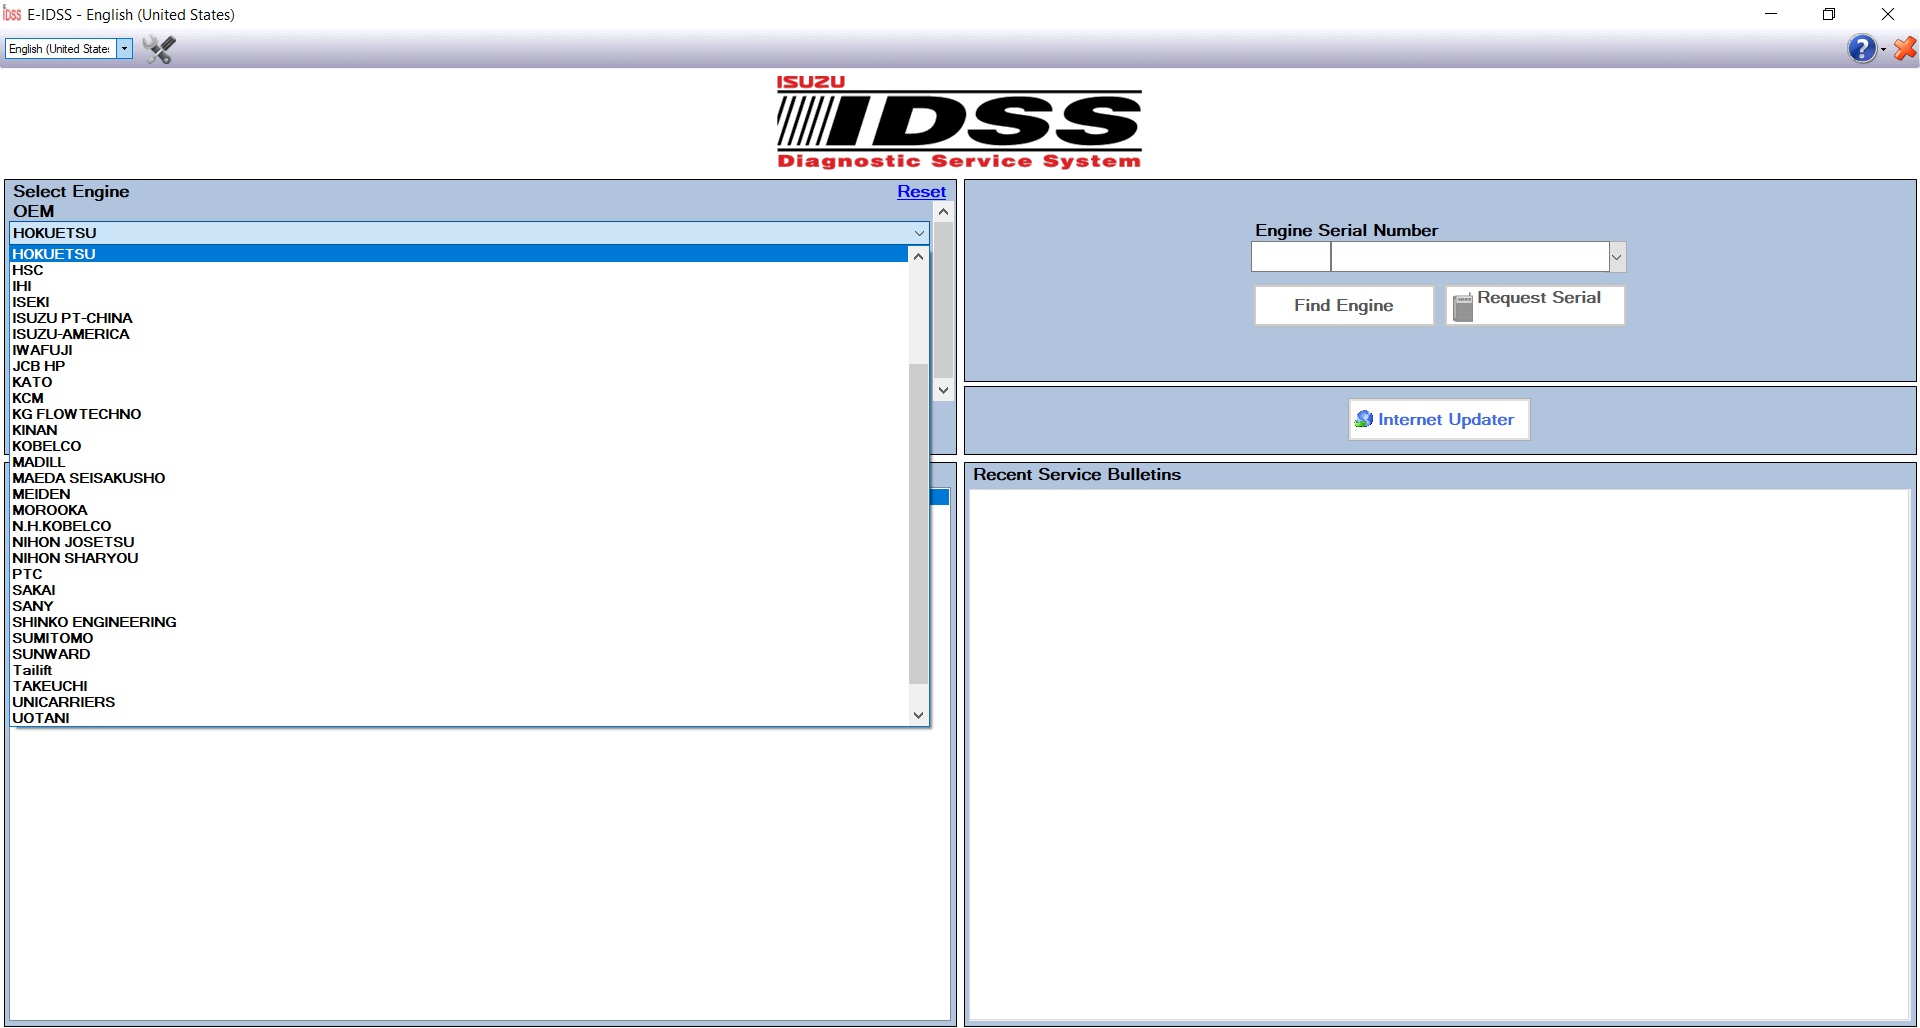 isuzu idss 2 software download